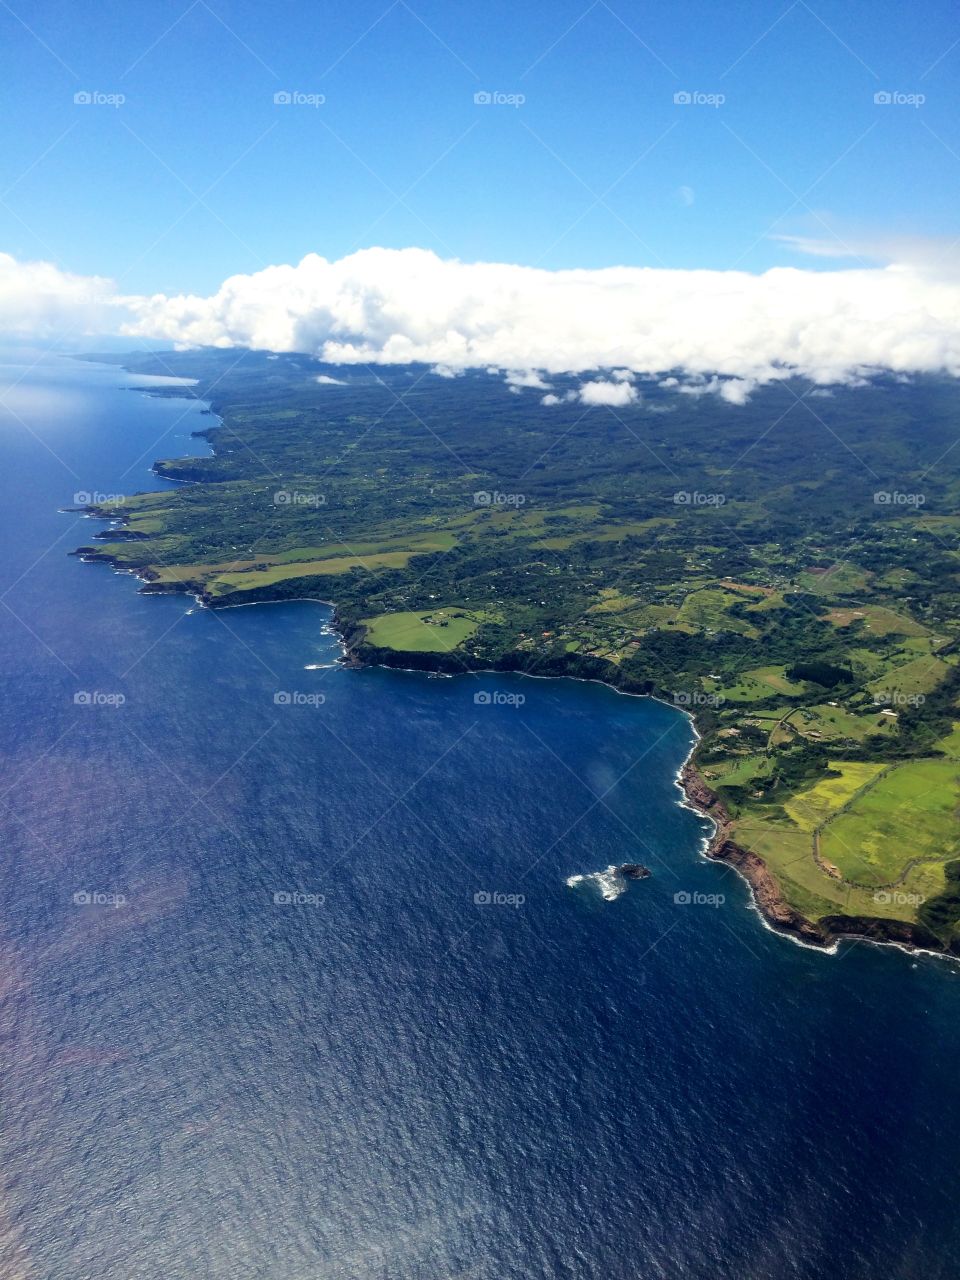 Flying over Maui, Hawaii